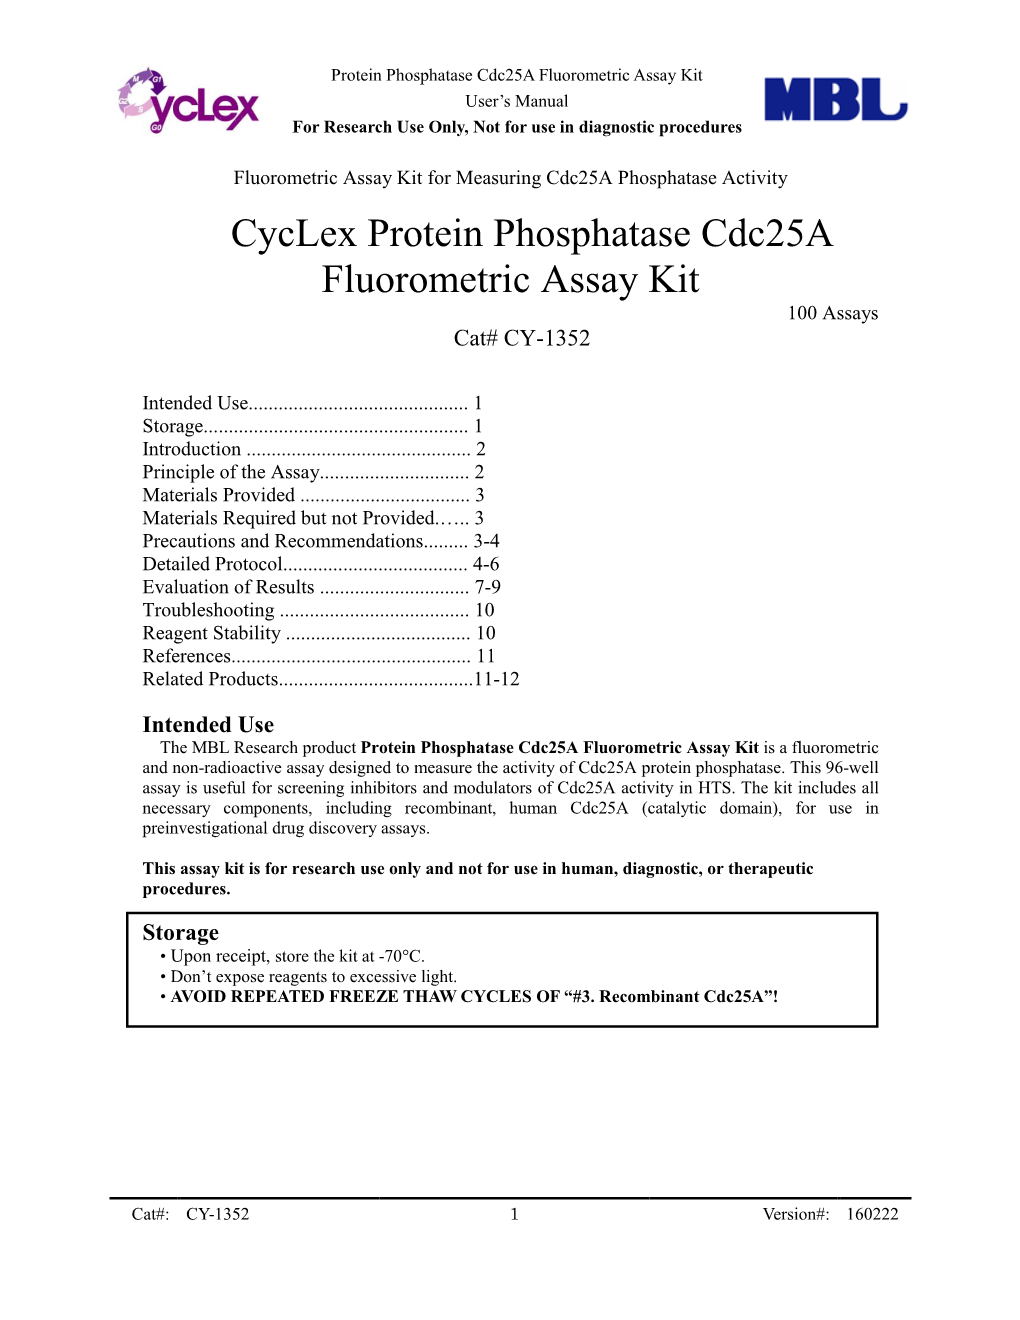 Cyclex Protein Phosphatase Cdc25a Fluorometric Assay Kit 100 Assays Cat# CY-1352